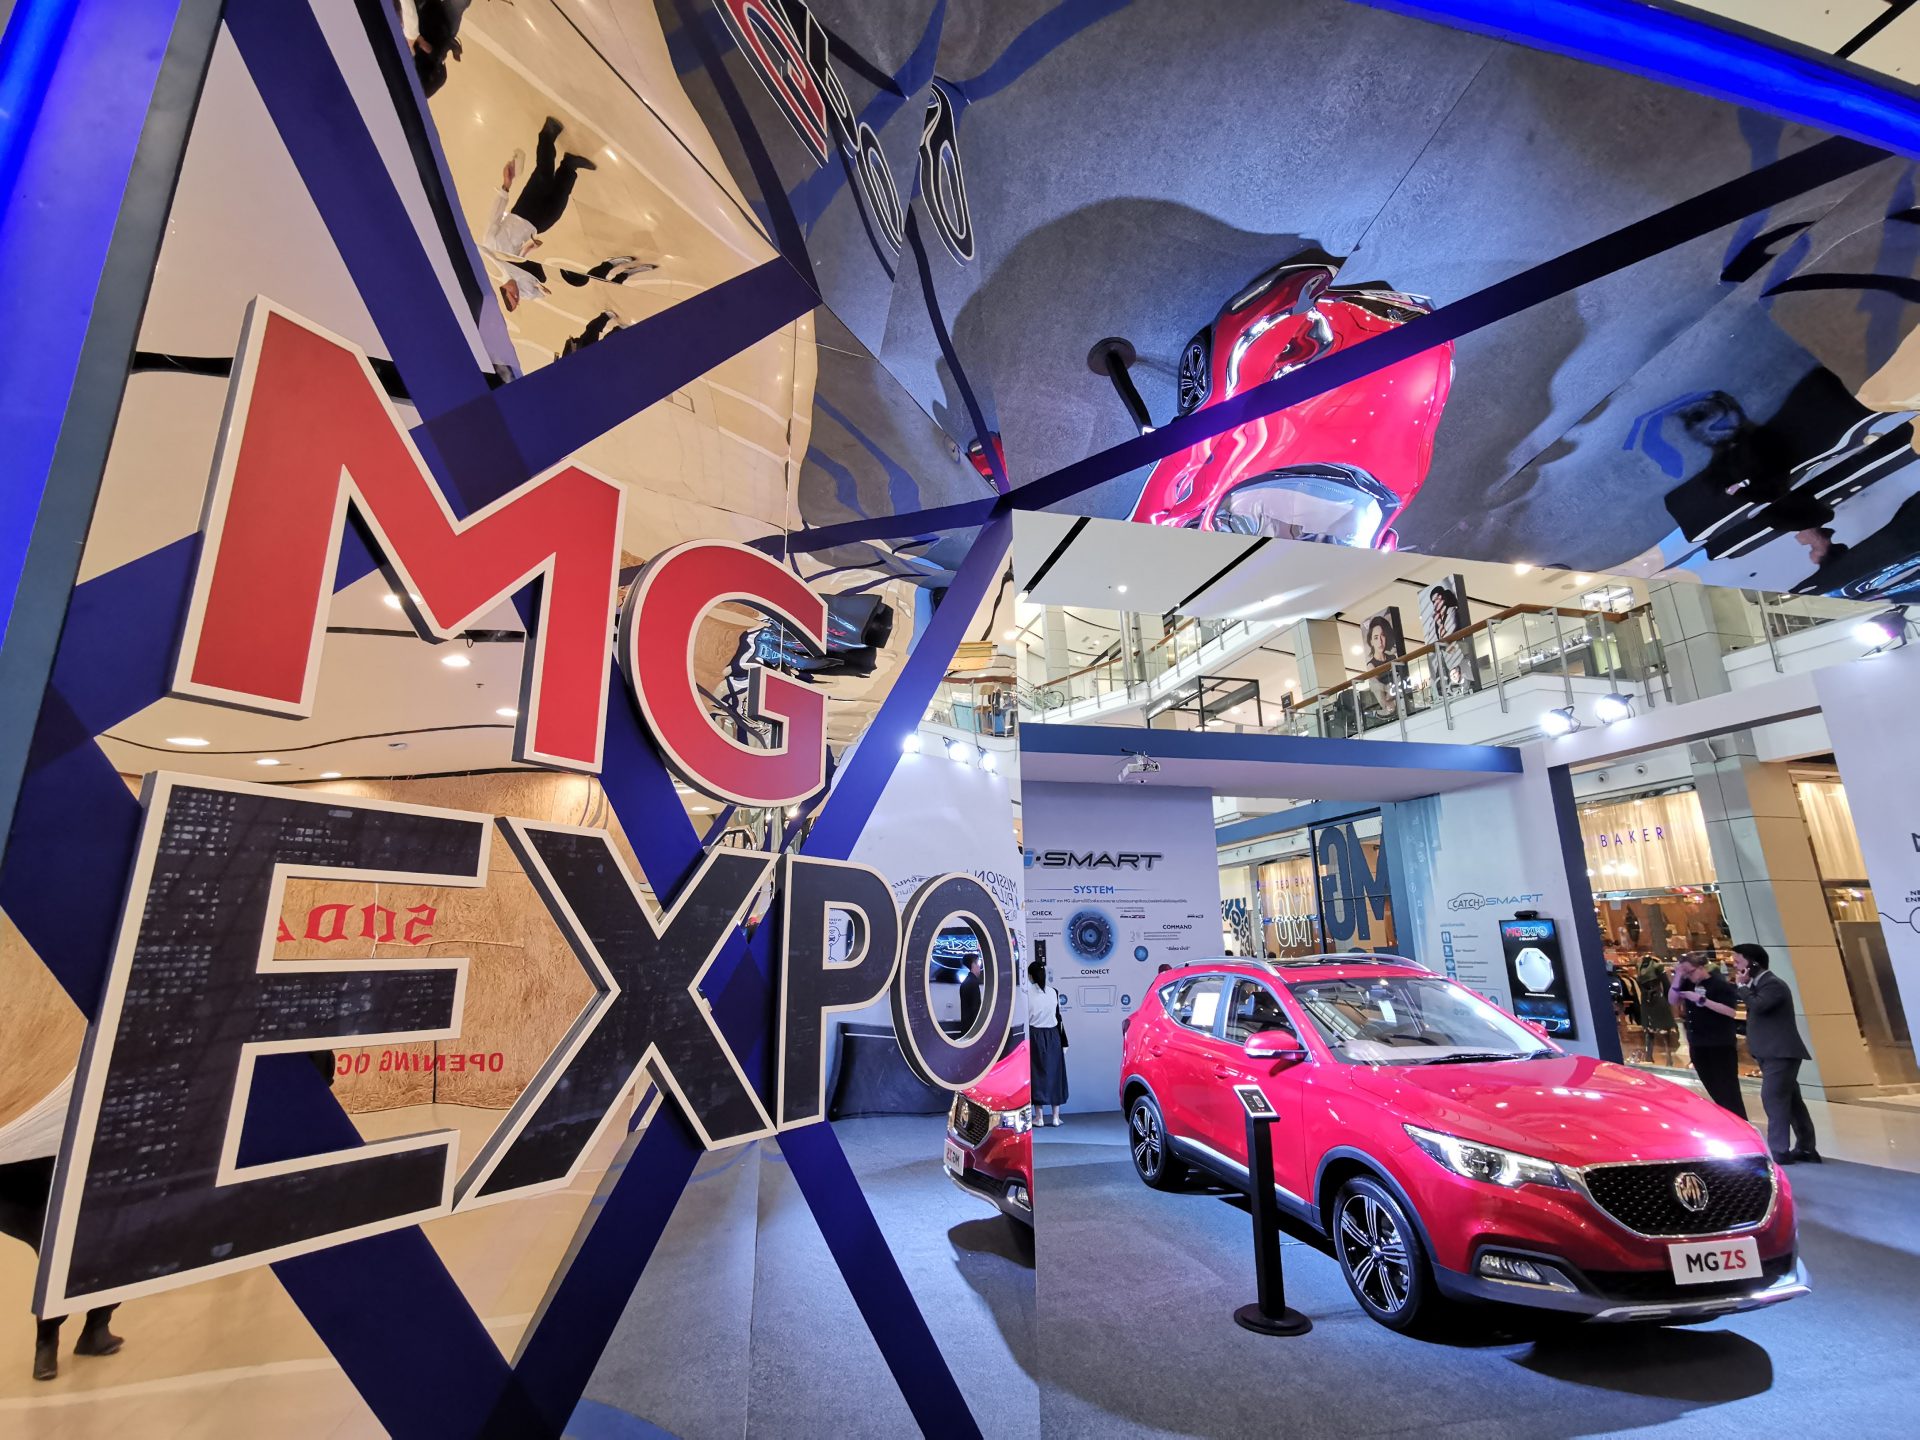 MG โชว์นวัตกรรมในรถยนต์รุ่นล่าสุดทั้ง MG 3 และ MG ZS ในงาน MG Expo 2018 ที่เซนทรัลเวิร์ล